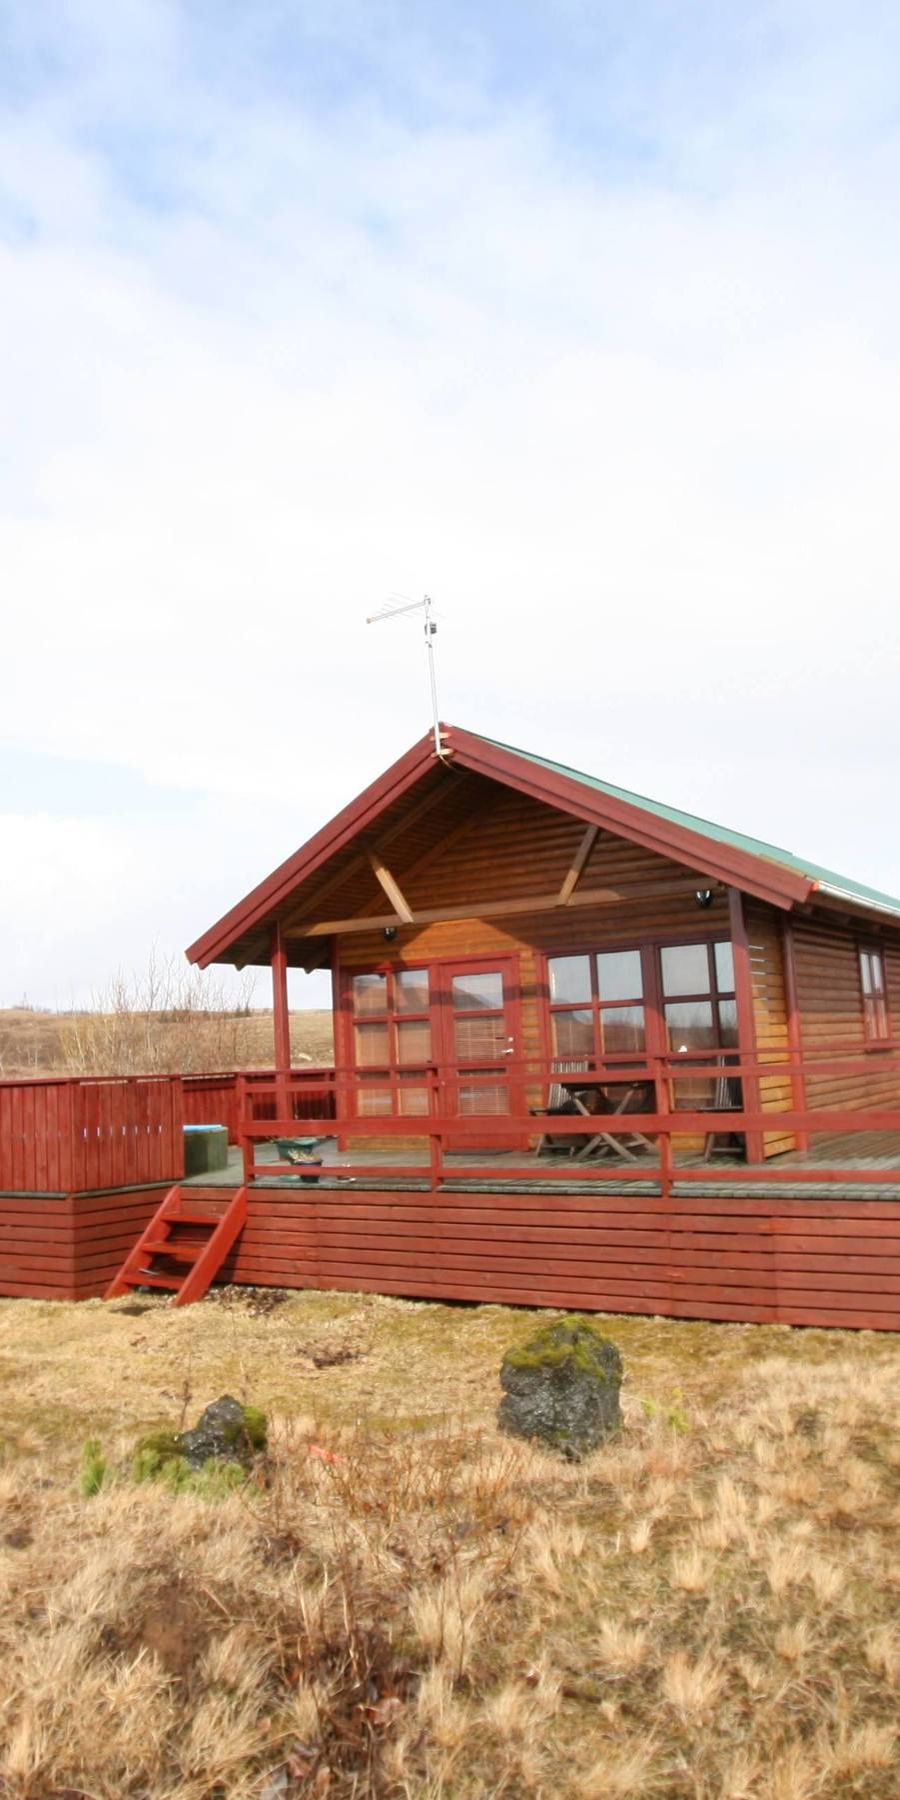 Das Ferienhaus liegt inmitten der südisländischen Landschaft des Þjórsárdalur